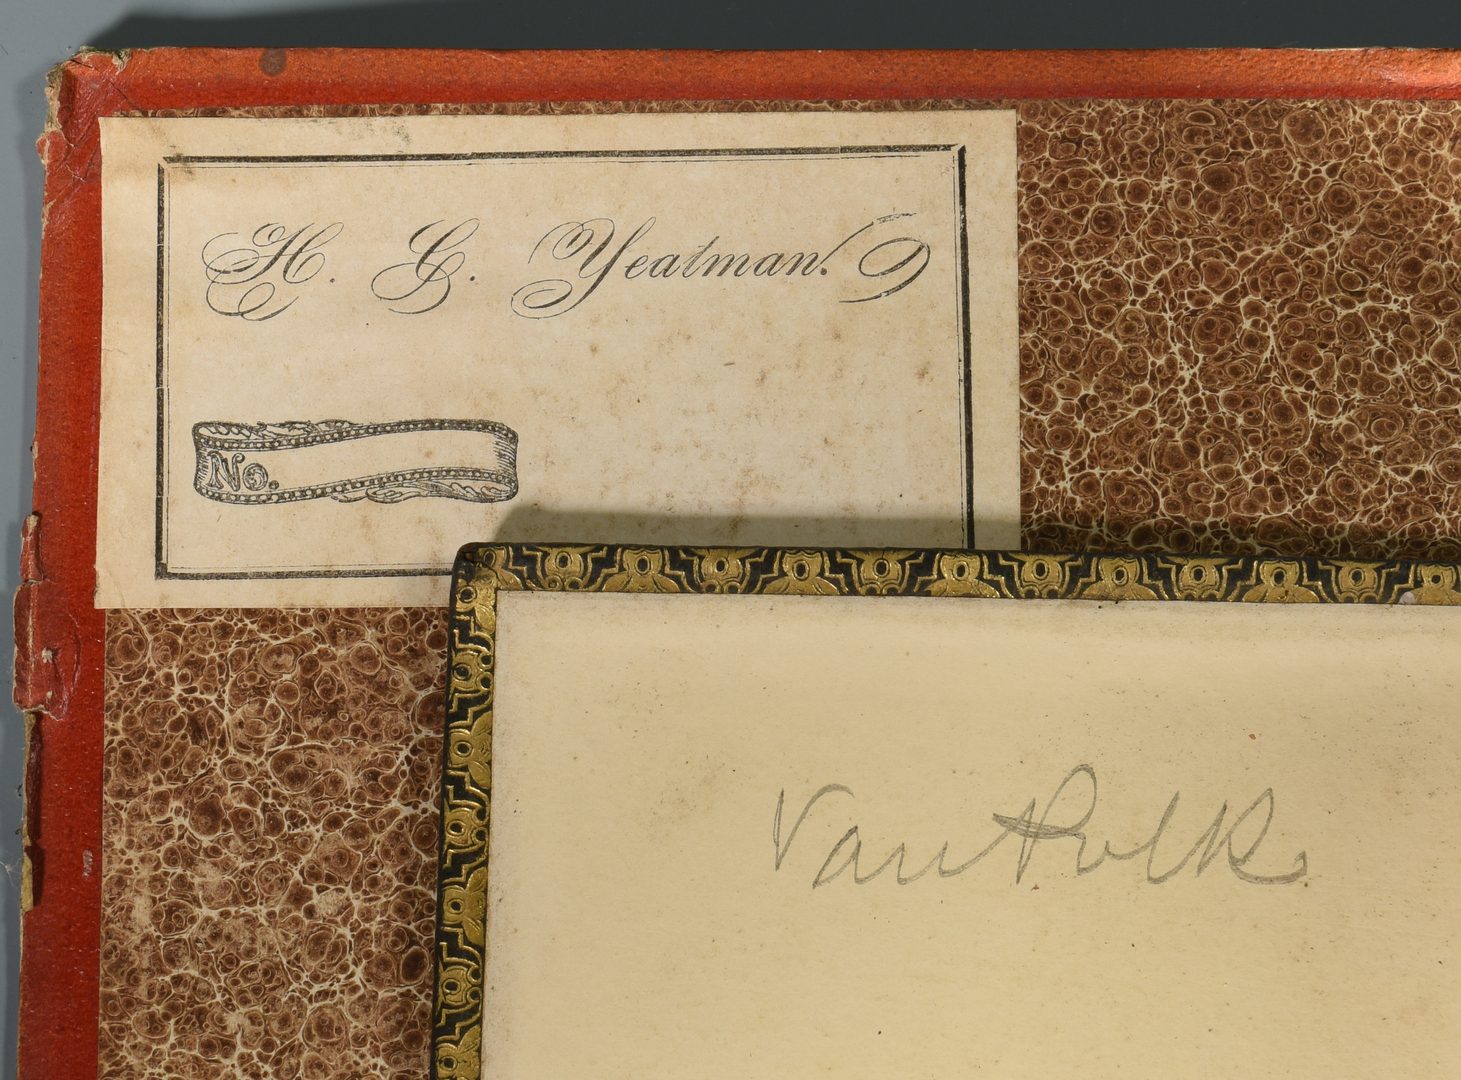 Lot 250: Books, Van Buren Letter from Hamilton Place plus photo (14 items).